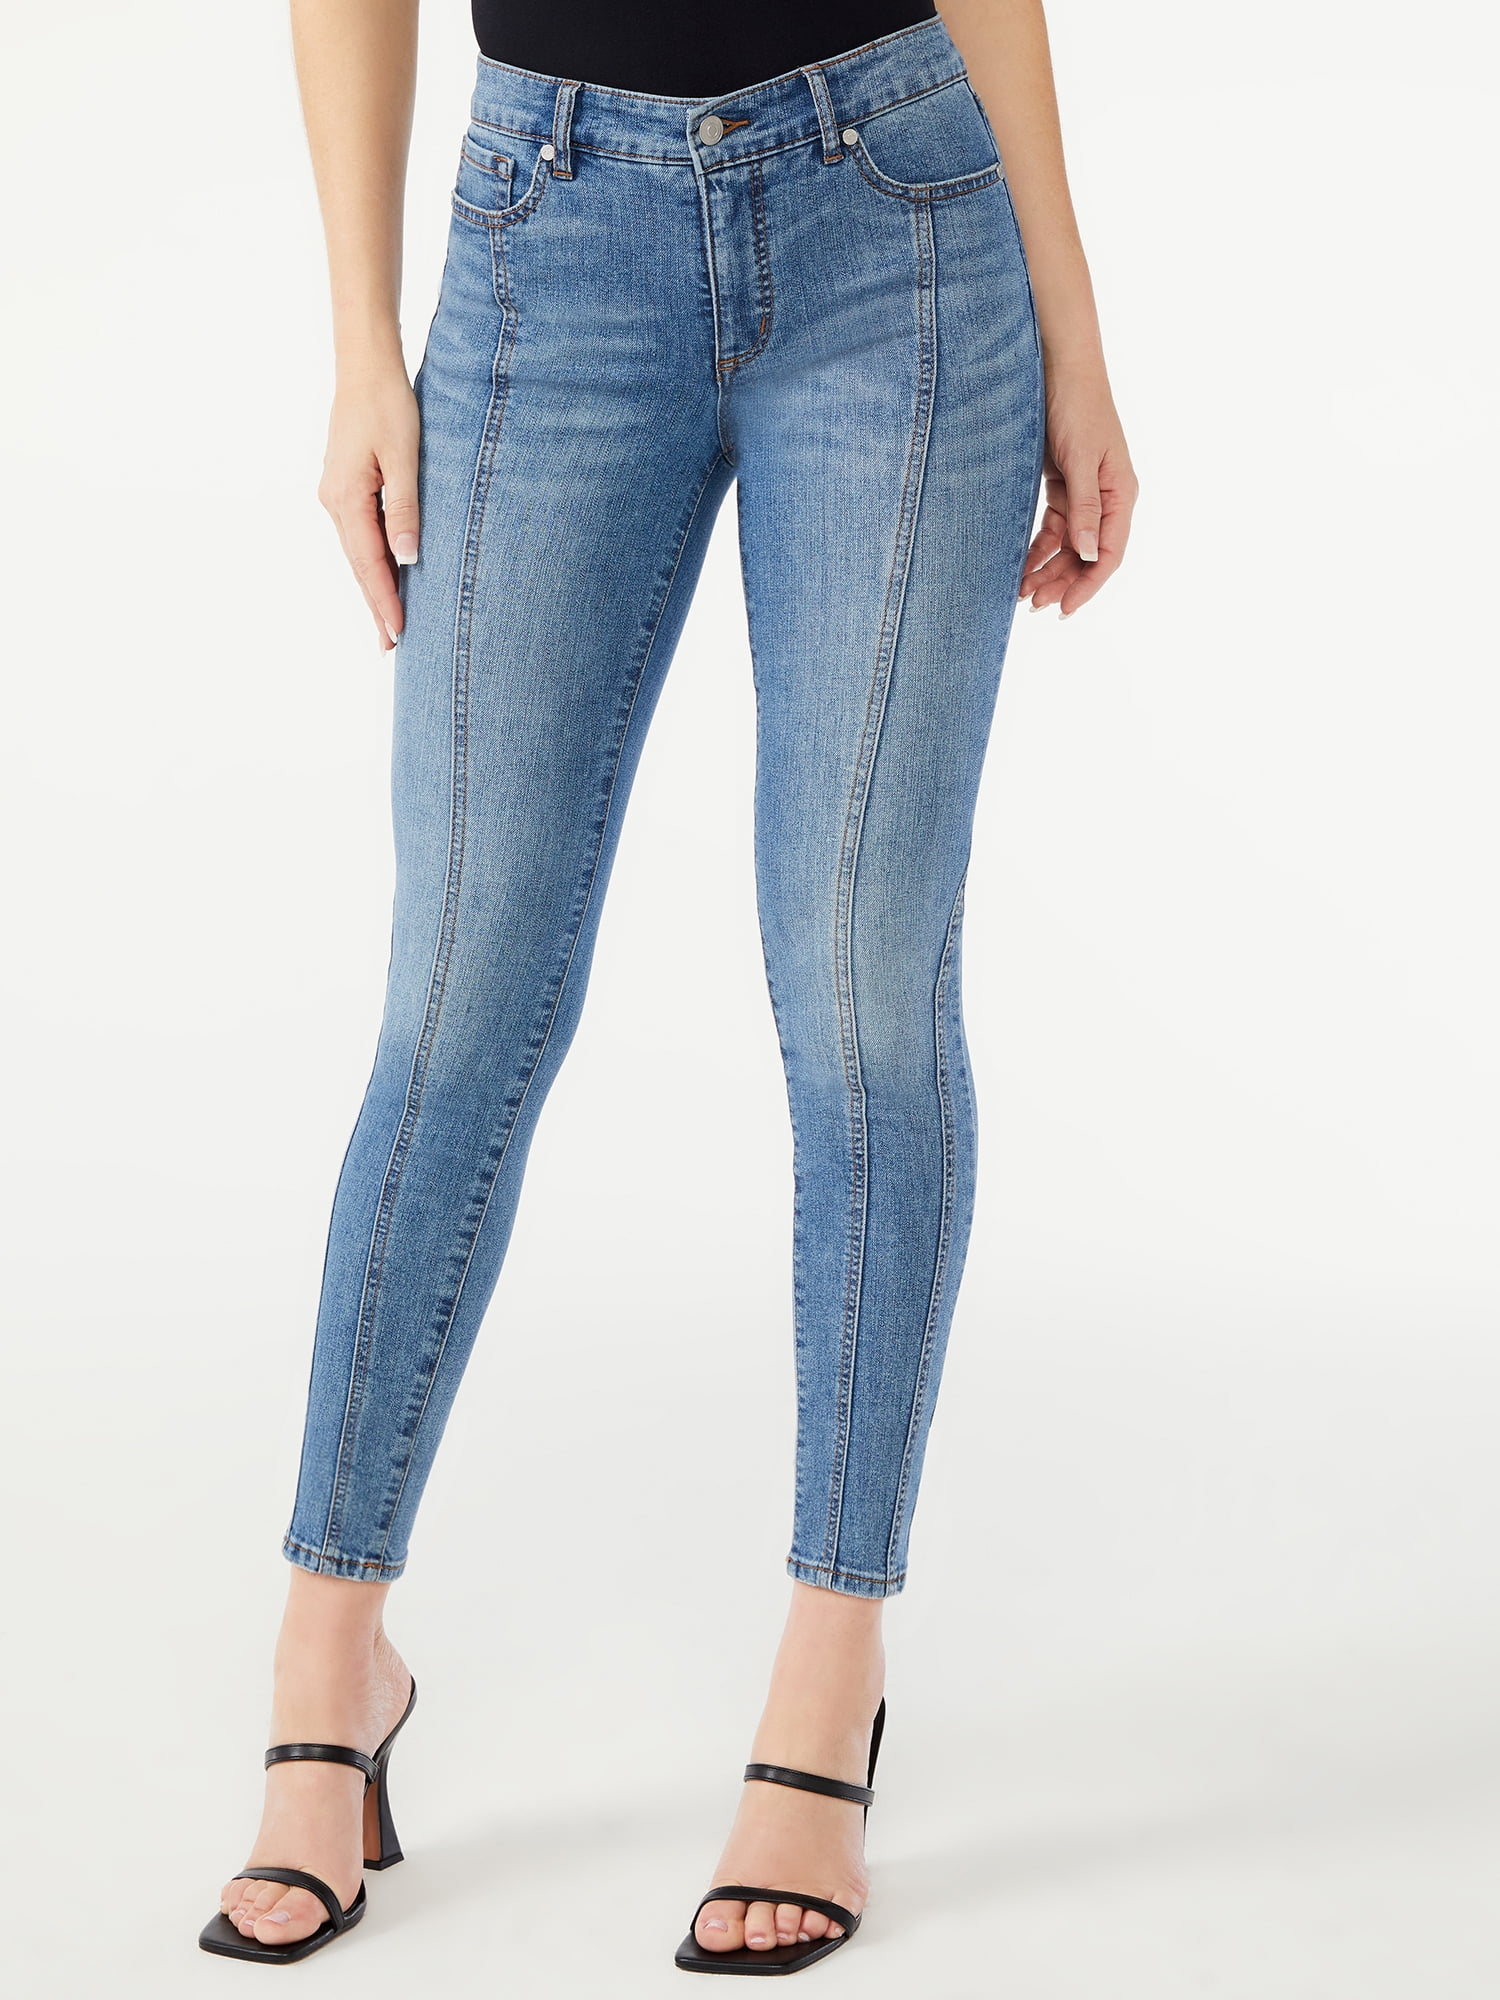 Sofia Jeans Women's Sofia Skinny Mid Rise Seamed Ankle Jeans - Walmart.com